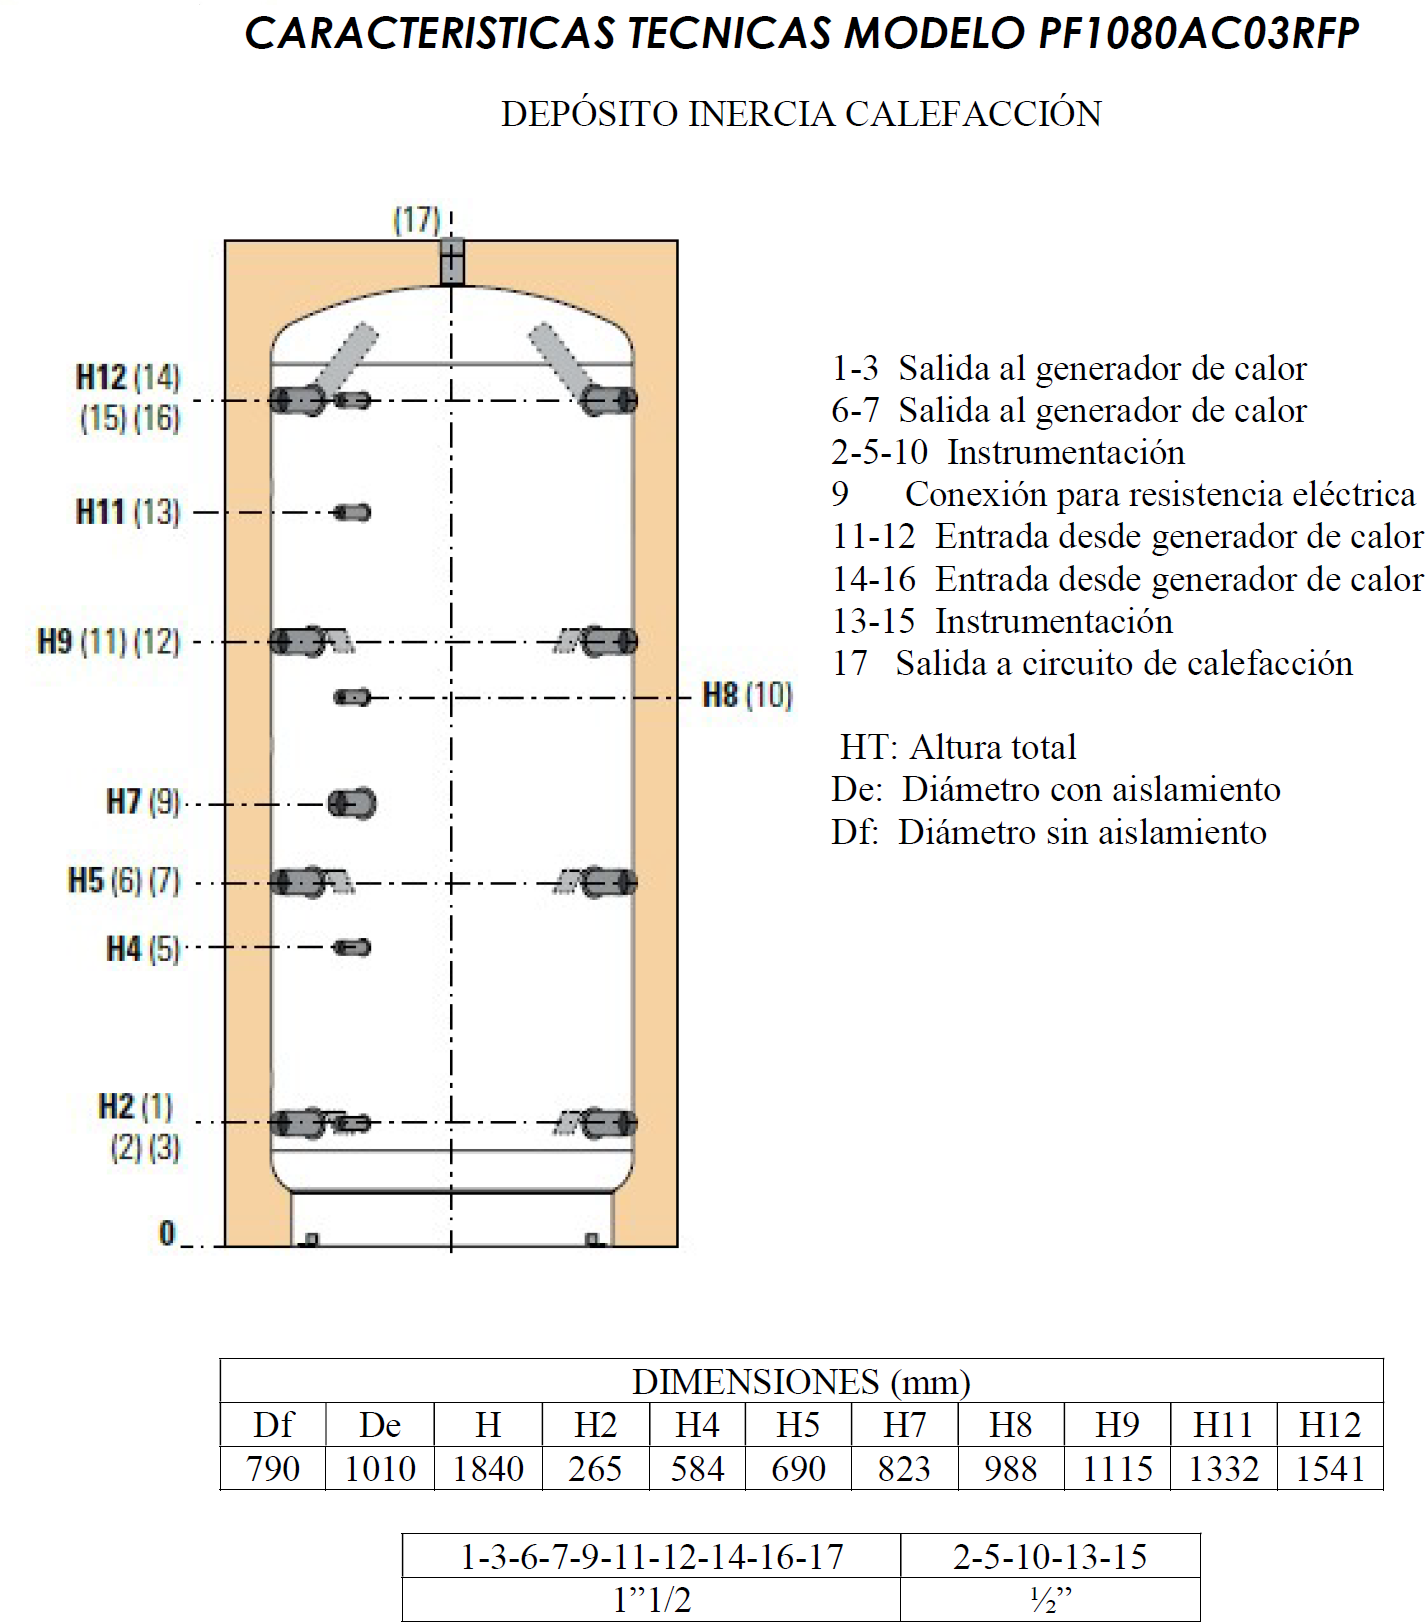 CARACTERISTICAS TECNICAS MODELO PF1050AC03RG DEPÓSITO INERCIA CALEFACCIÓN 1-3 Salida al generador de calor 6-7 Salida al generador de calor 2-5-10 Instrumentación 9 Conexión para resistencia eléctrica 11-12 Entrada desde generador de calor 14-16 Entrada desde generador de calor 13-15 Instrumentación 17 Salida a circuito de calefacción HT: Altura total De: Diámetro con aislamiento Df: Diámetro sin aislamiento